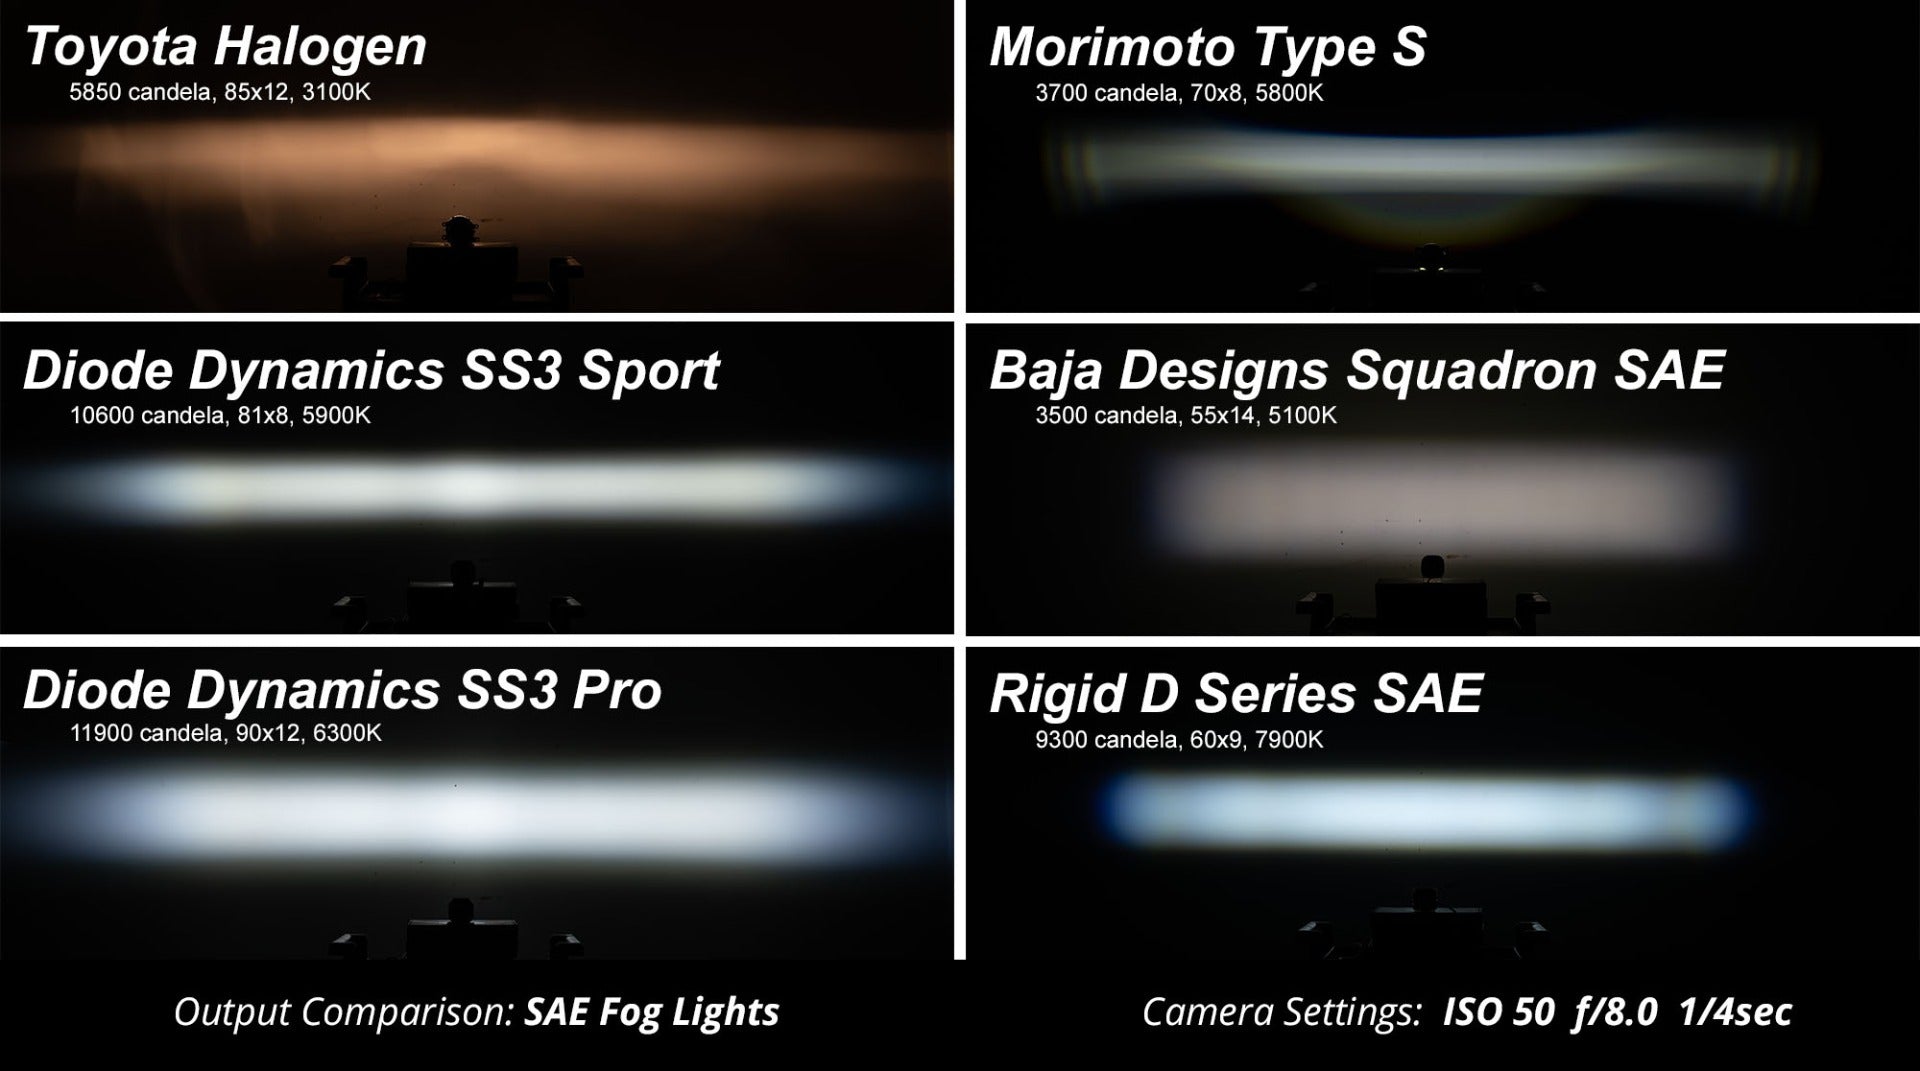 SS3 LED Fog Light Kit for 2012-2018 Chevrolet Sonic White SAE Fog Pro Diode Dynamics